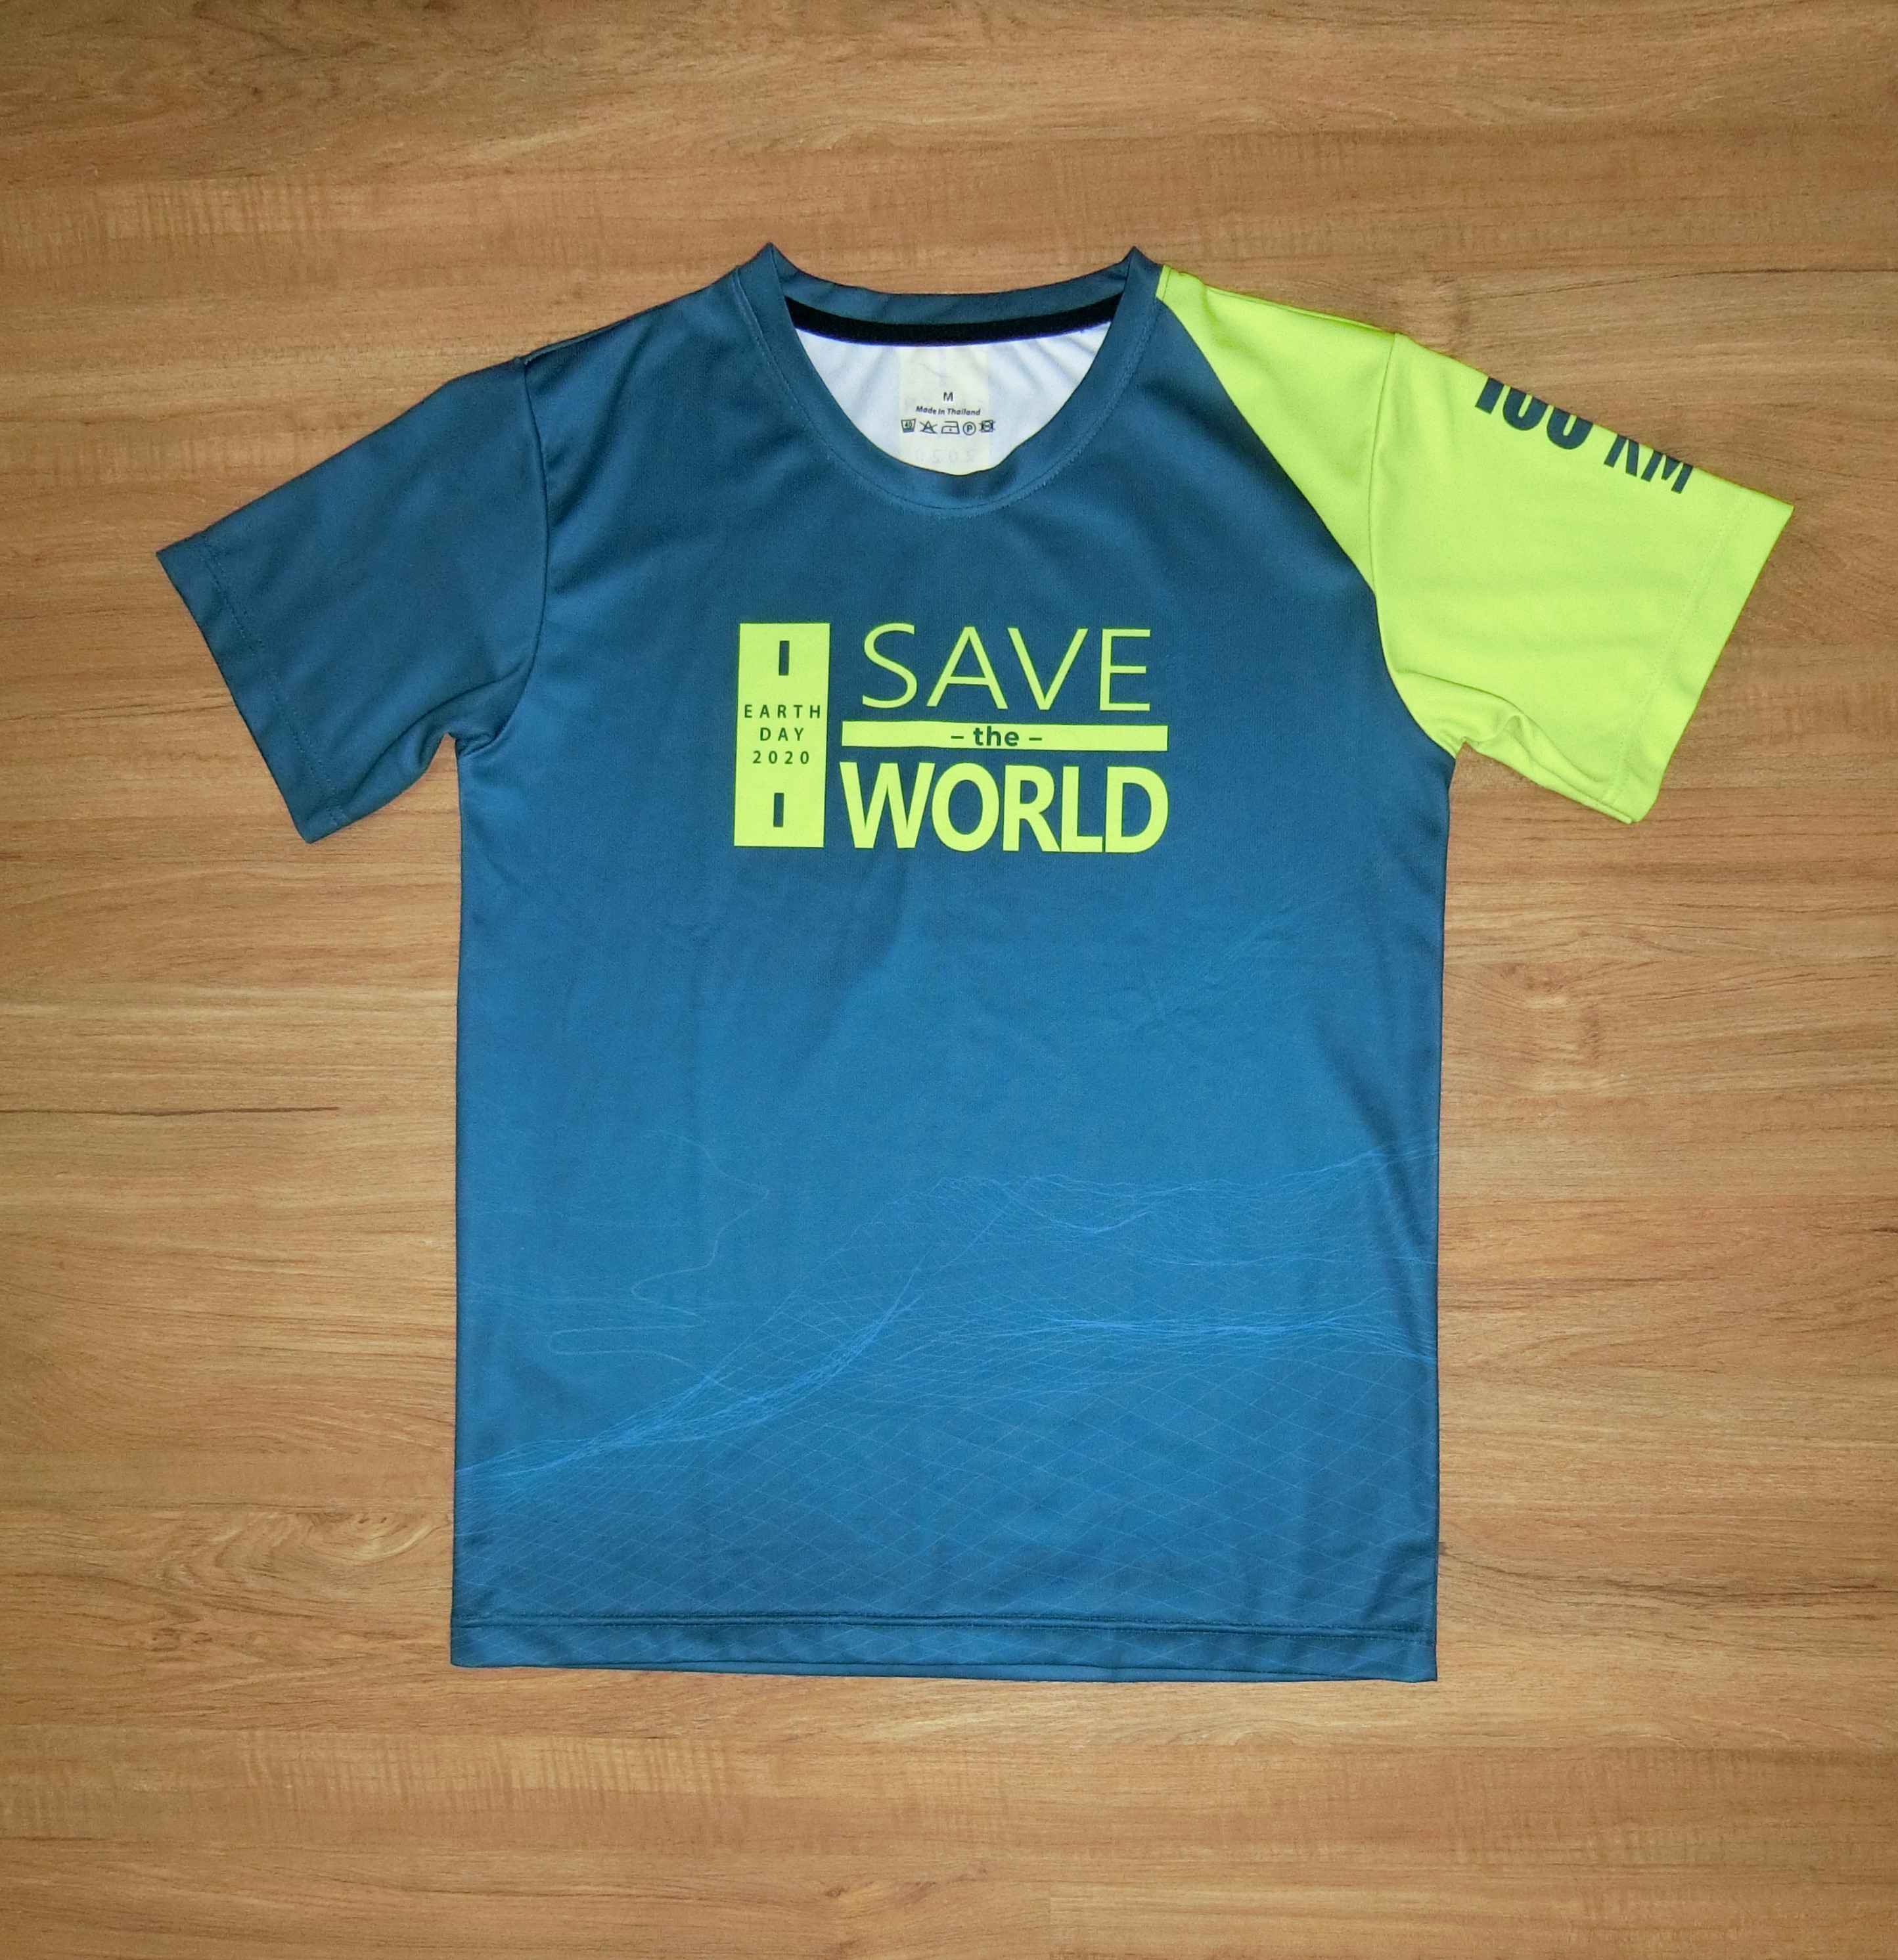 เสื้อ FINISHER 100 KM. งานวิ่ง Save the world 2020